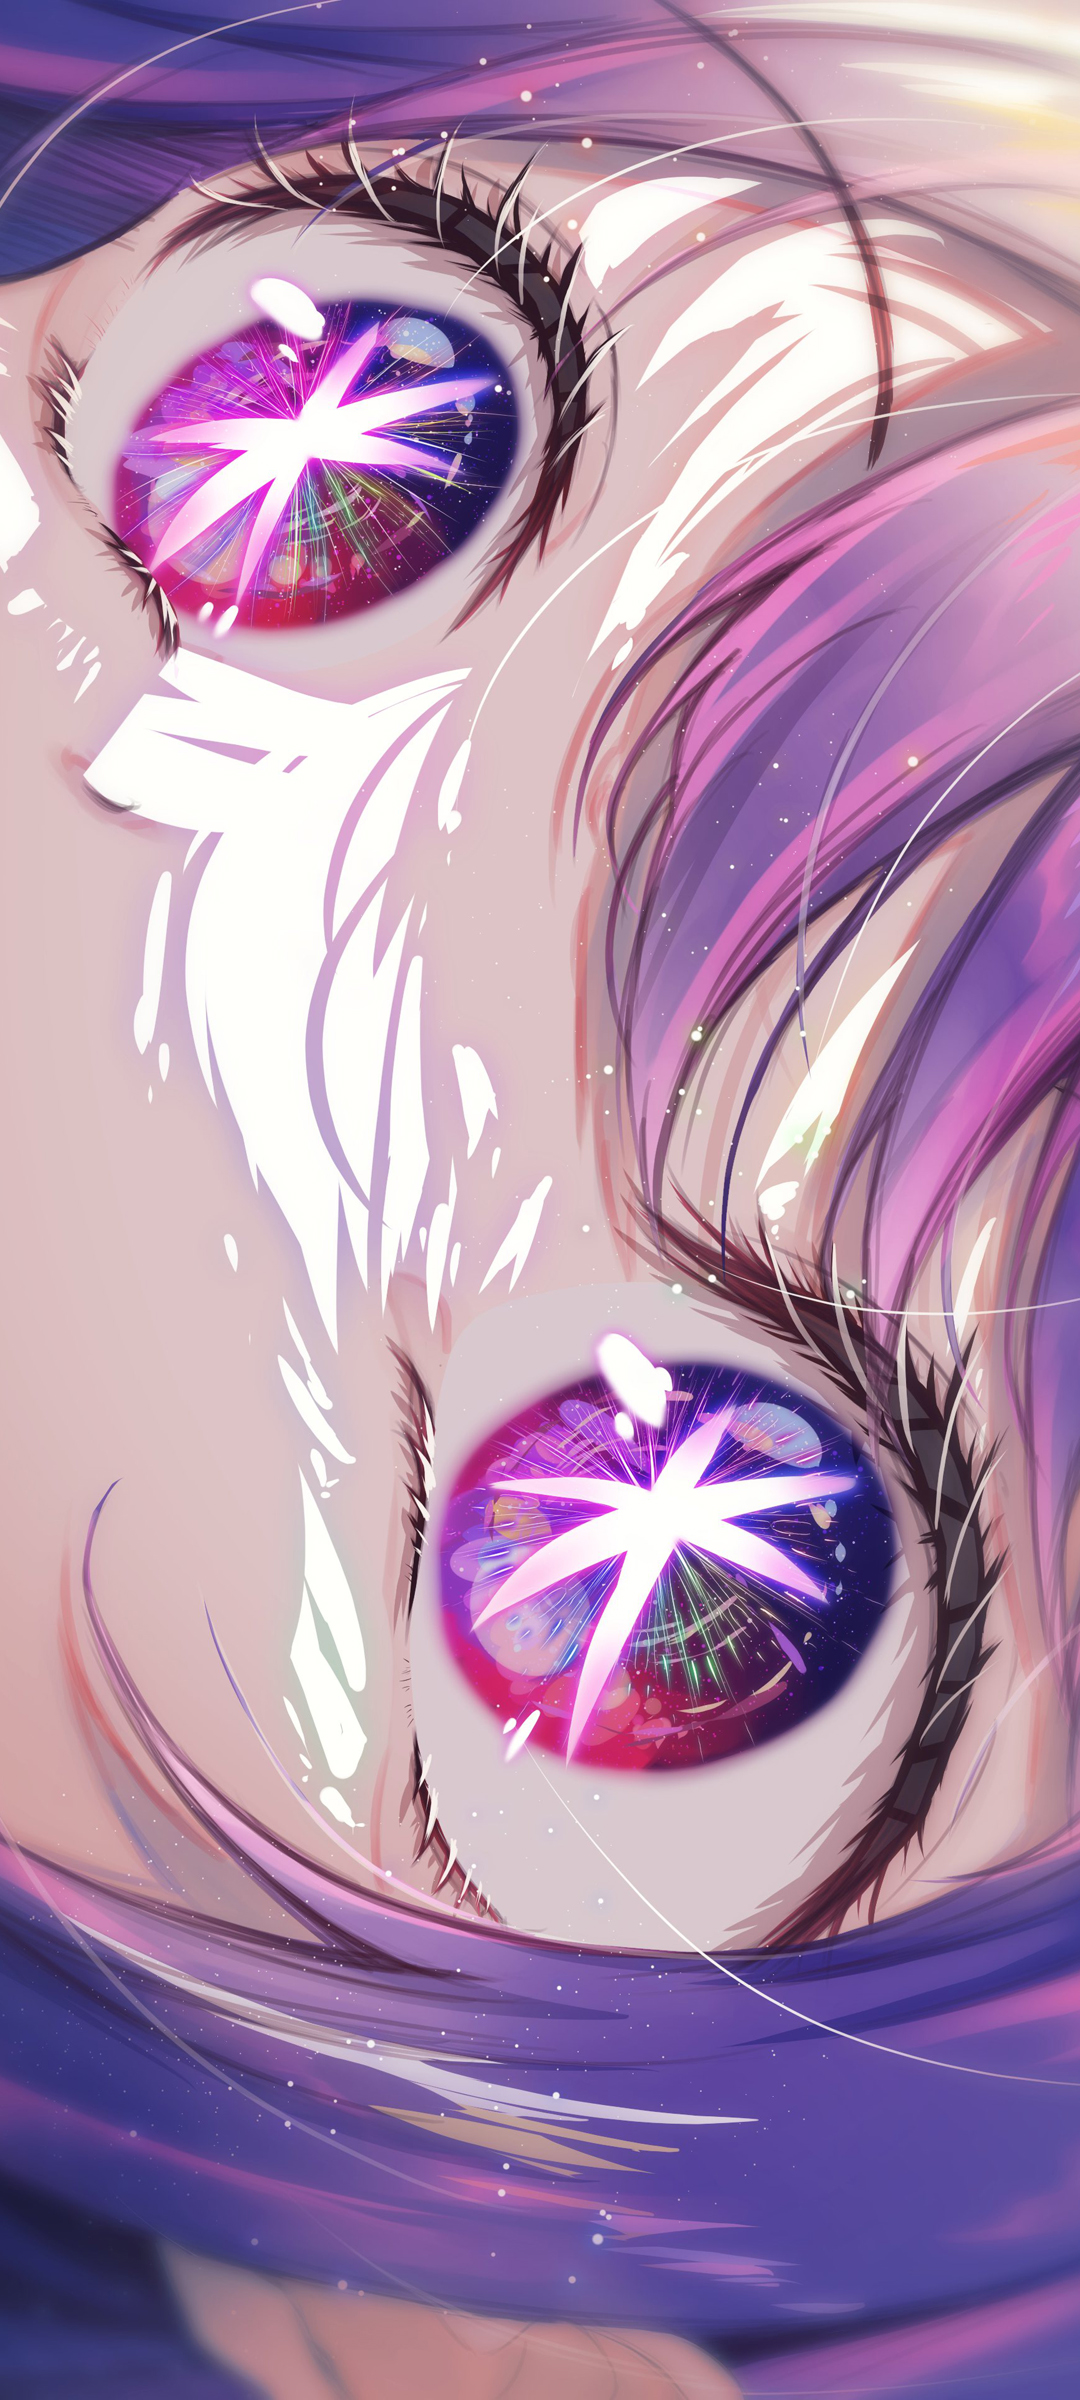 《星野爱》紫色的头发 紫色眼睛 脸 手机壁纸